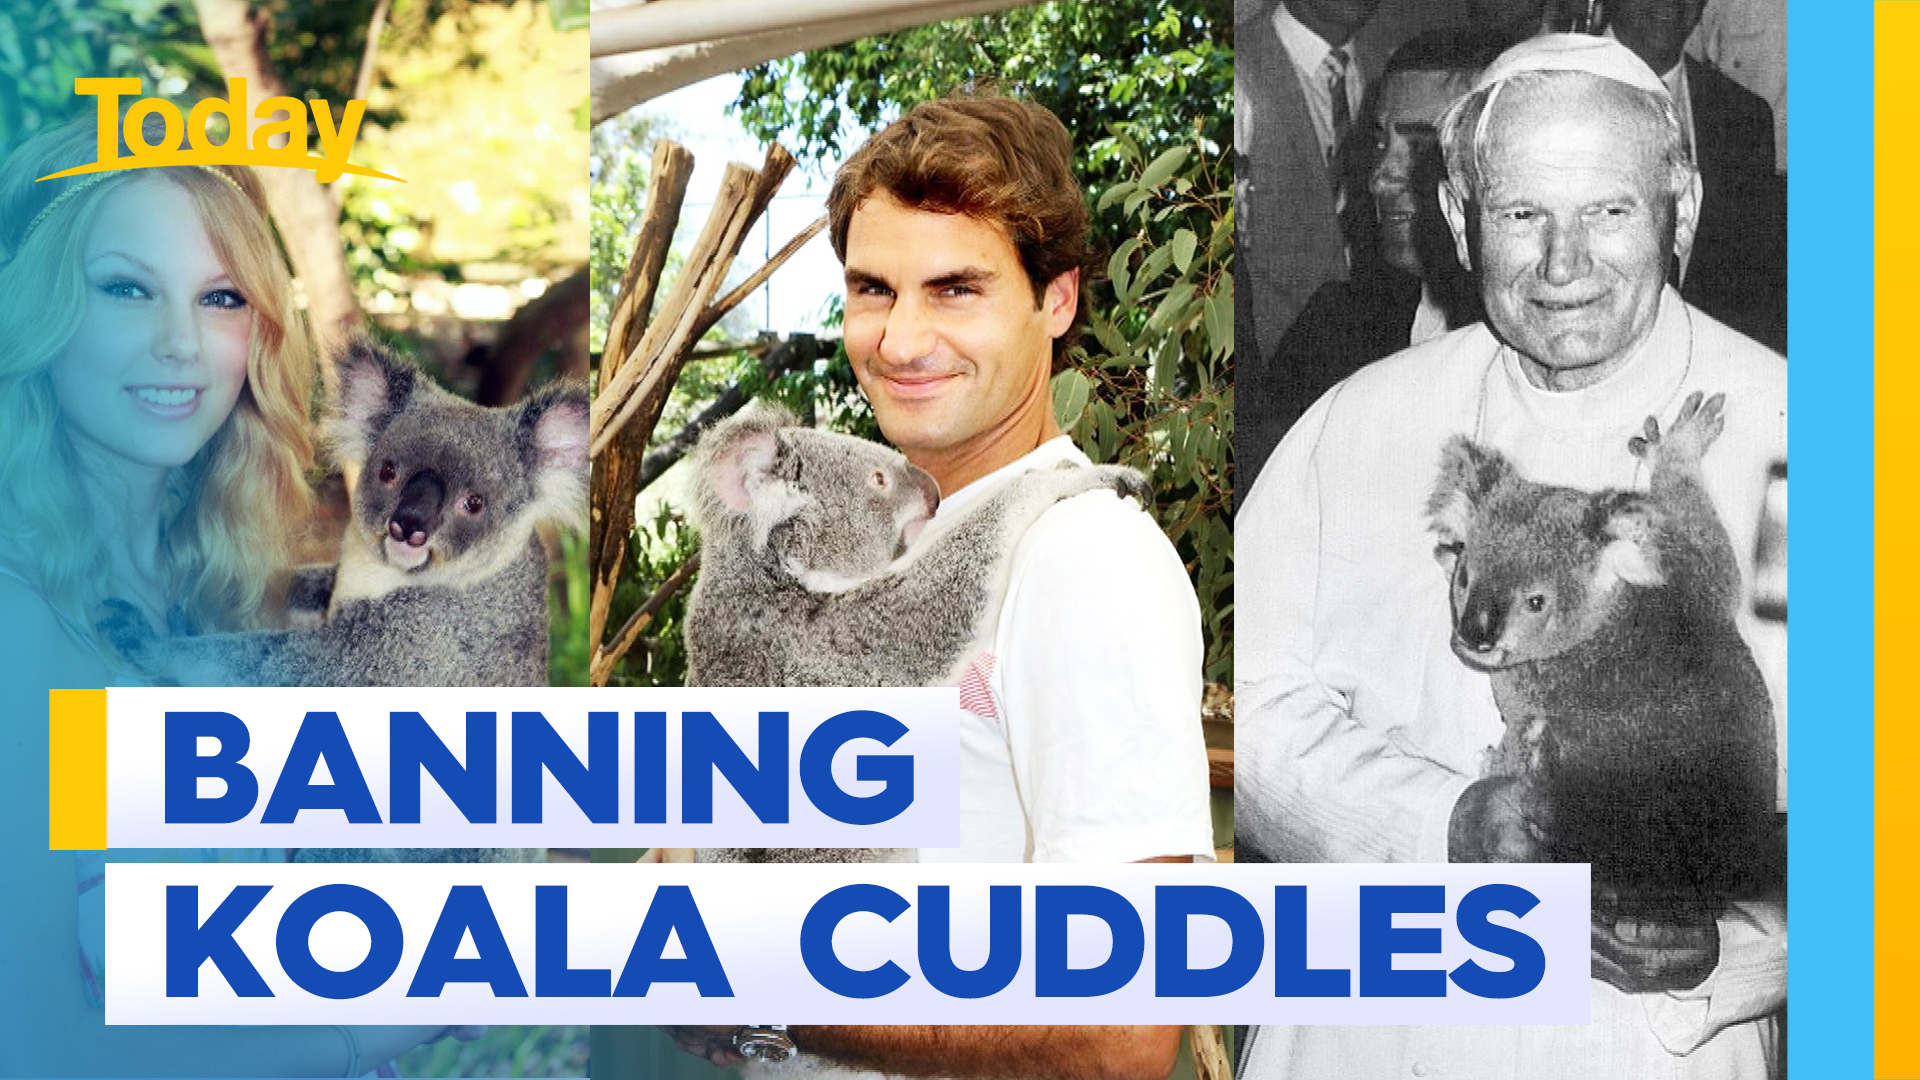 Aussie sanctuary makes bold move to stop koala cuddles